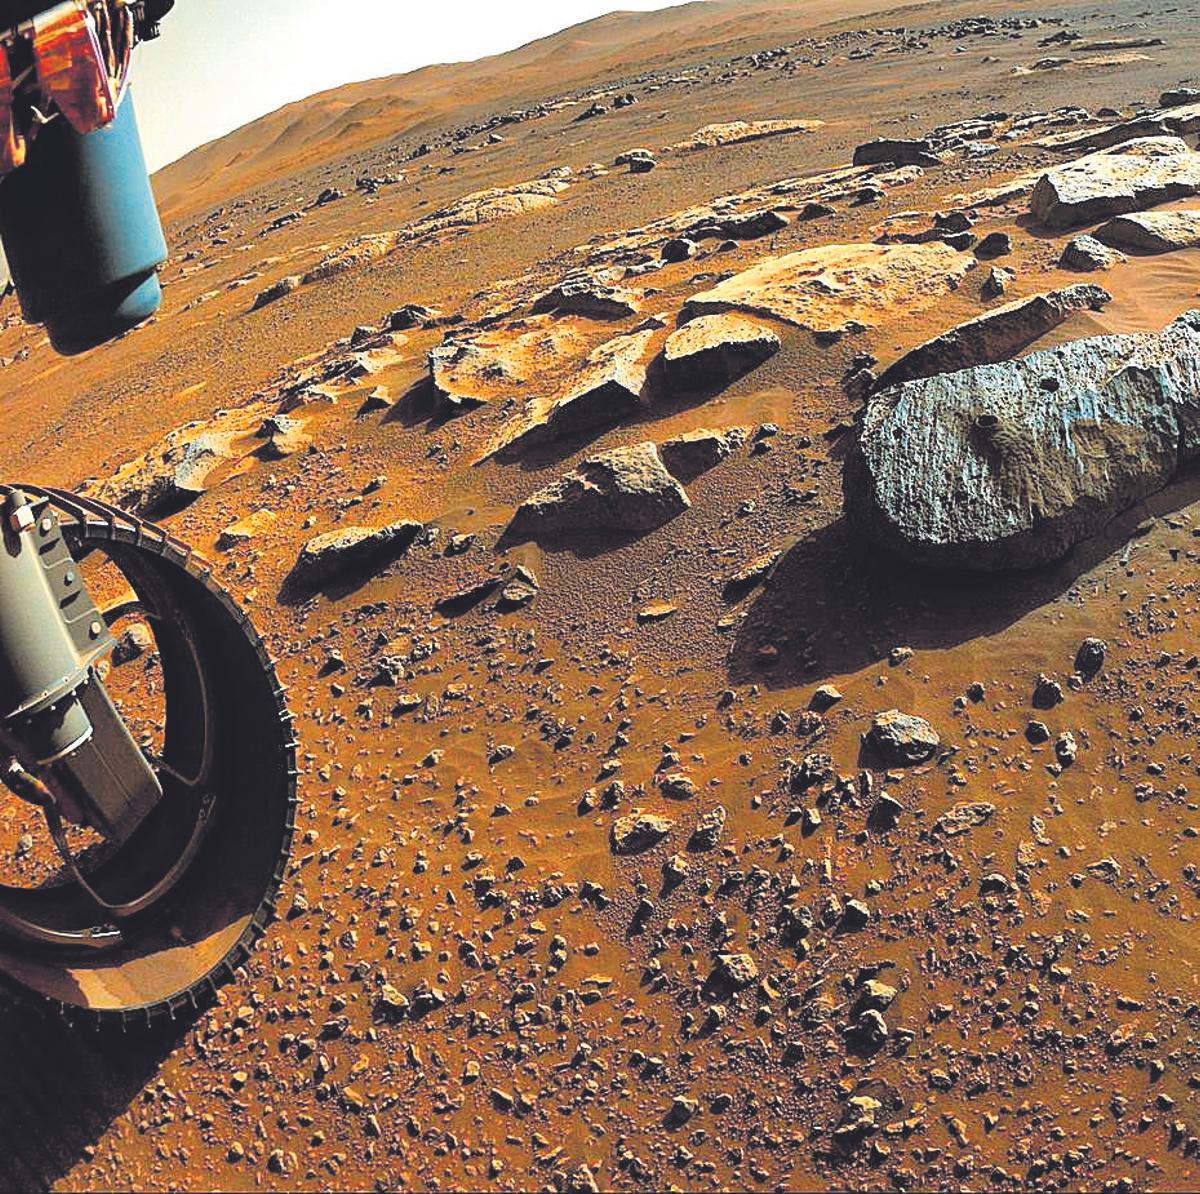 Misión de la Nasa en Marte.